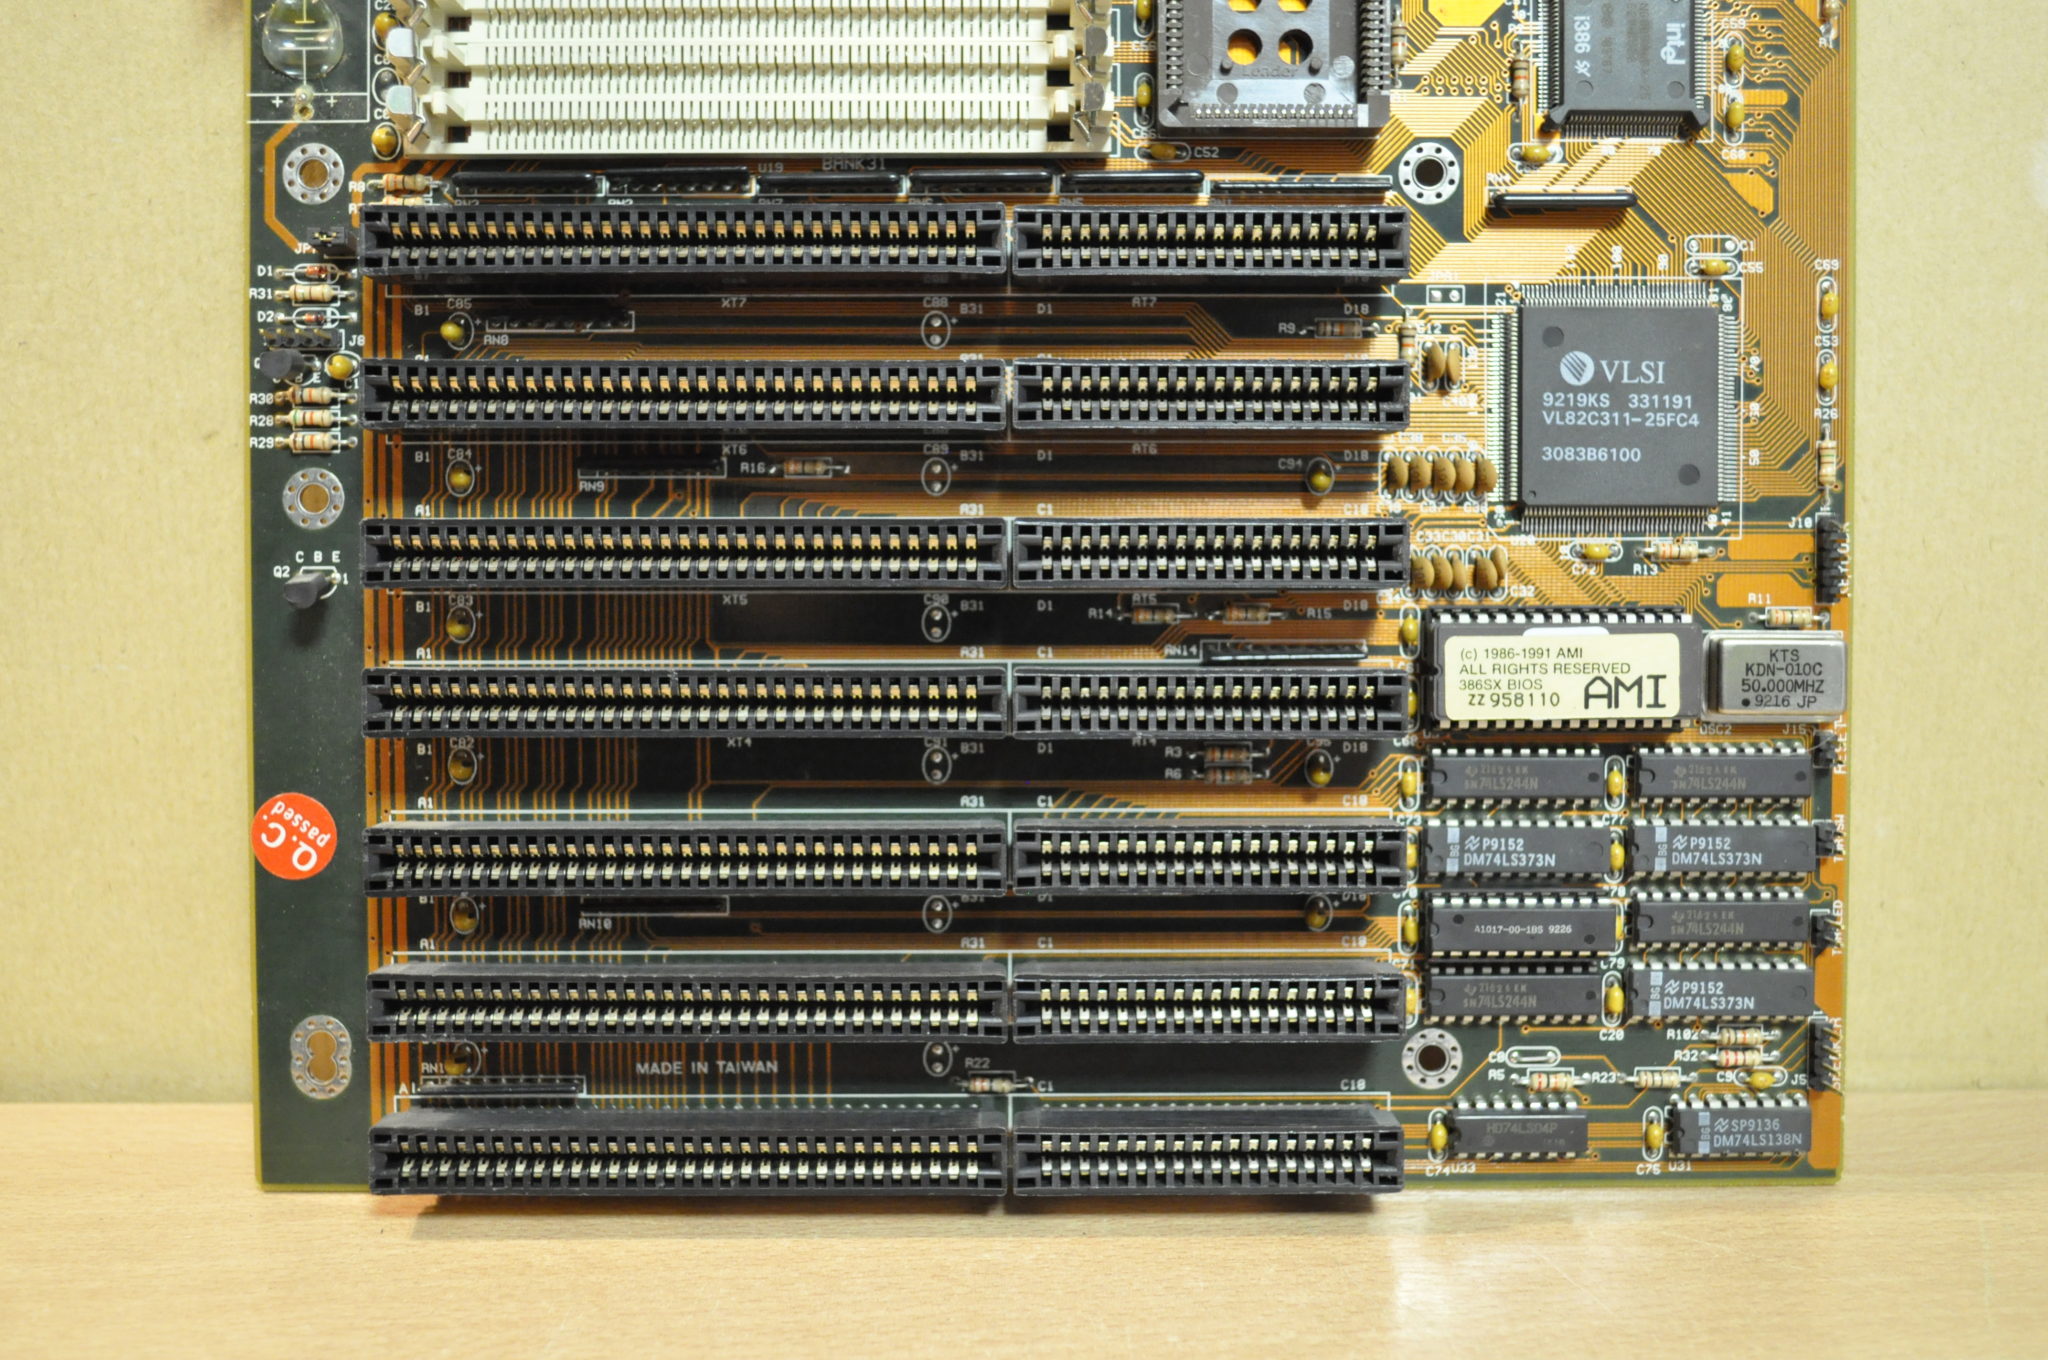 VLSI 386 Motherboard 8 x 72 pin simm's, 7 x ISA slots i386 SX NC